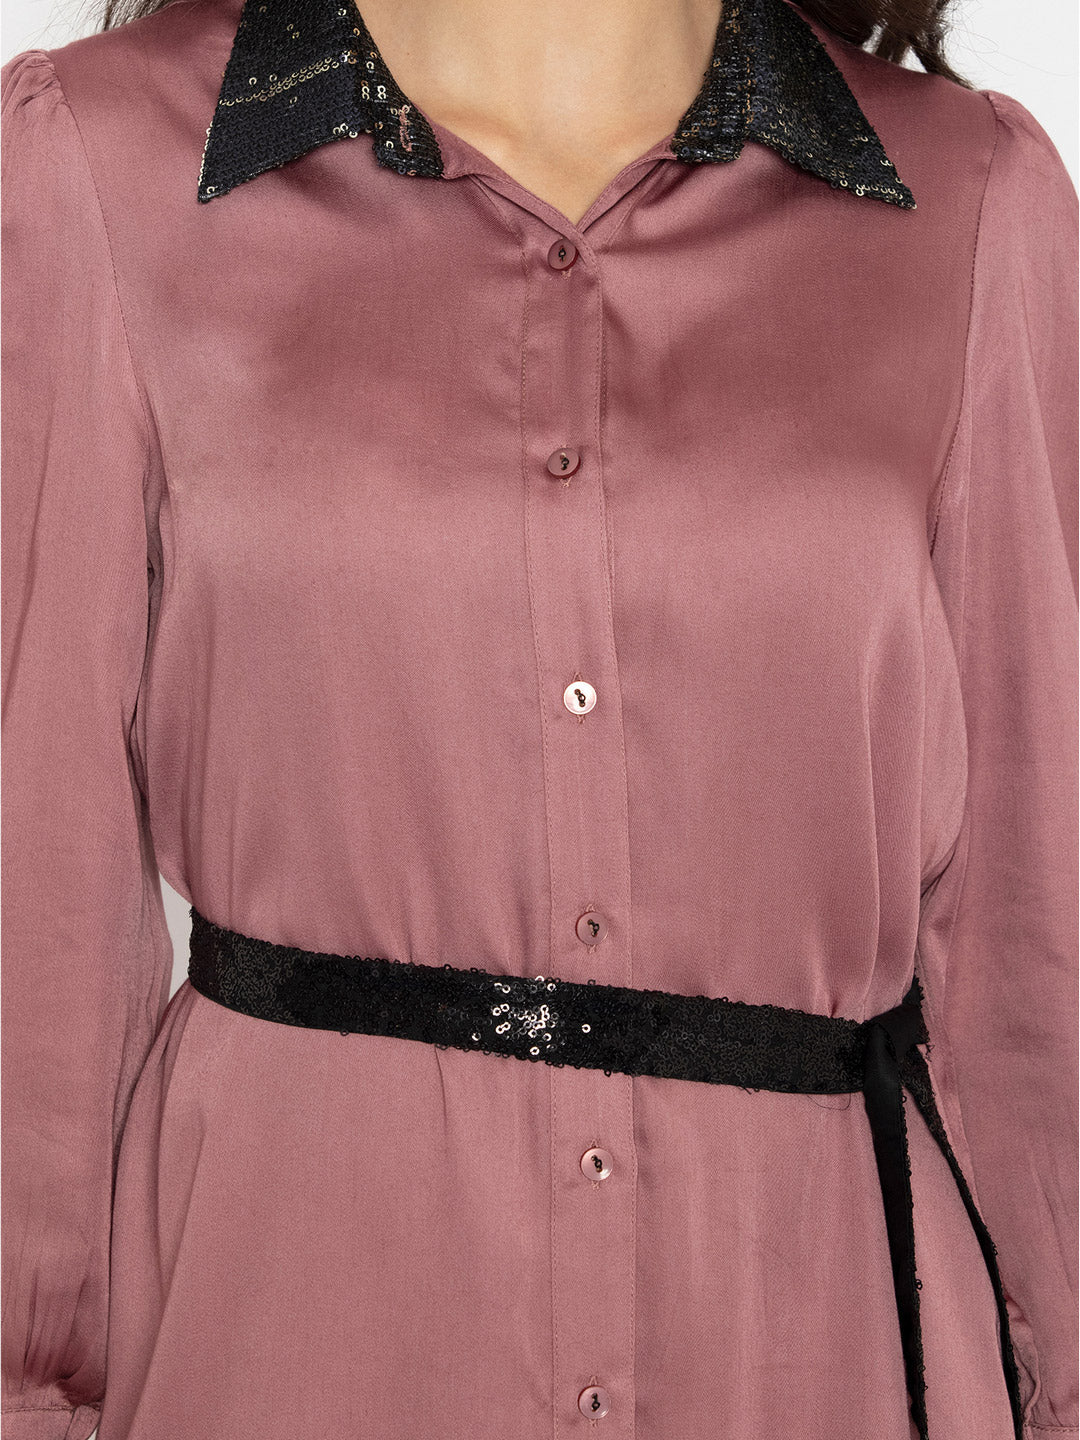 Ava Collar Shirt Dress | Ava Sequin Collar Shirt Dress